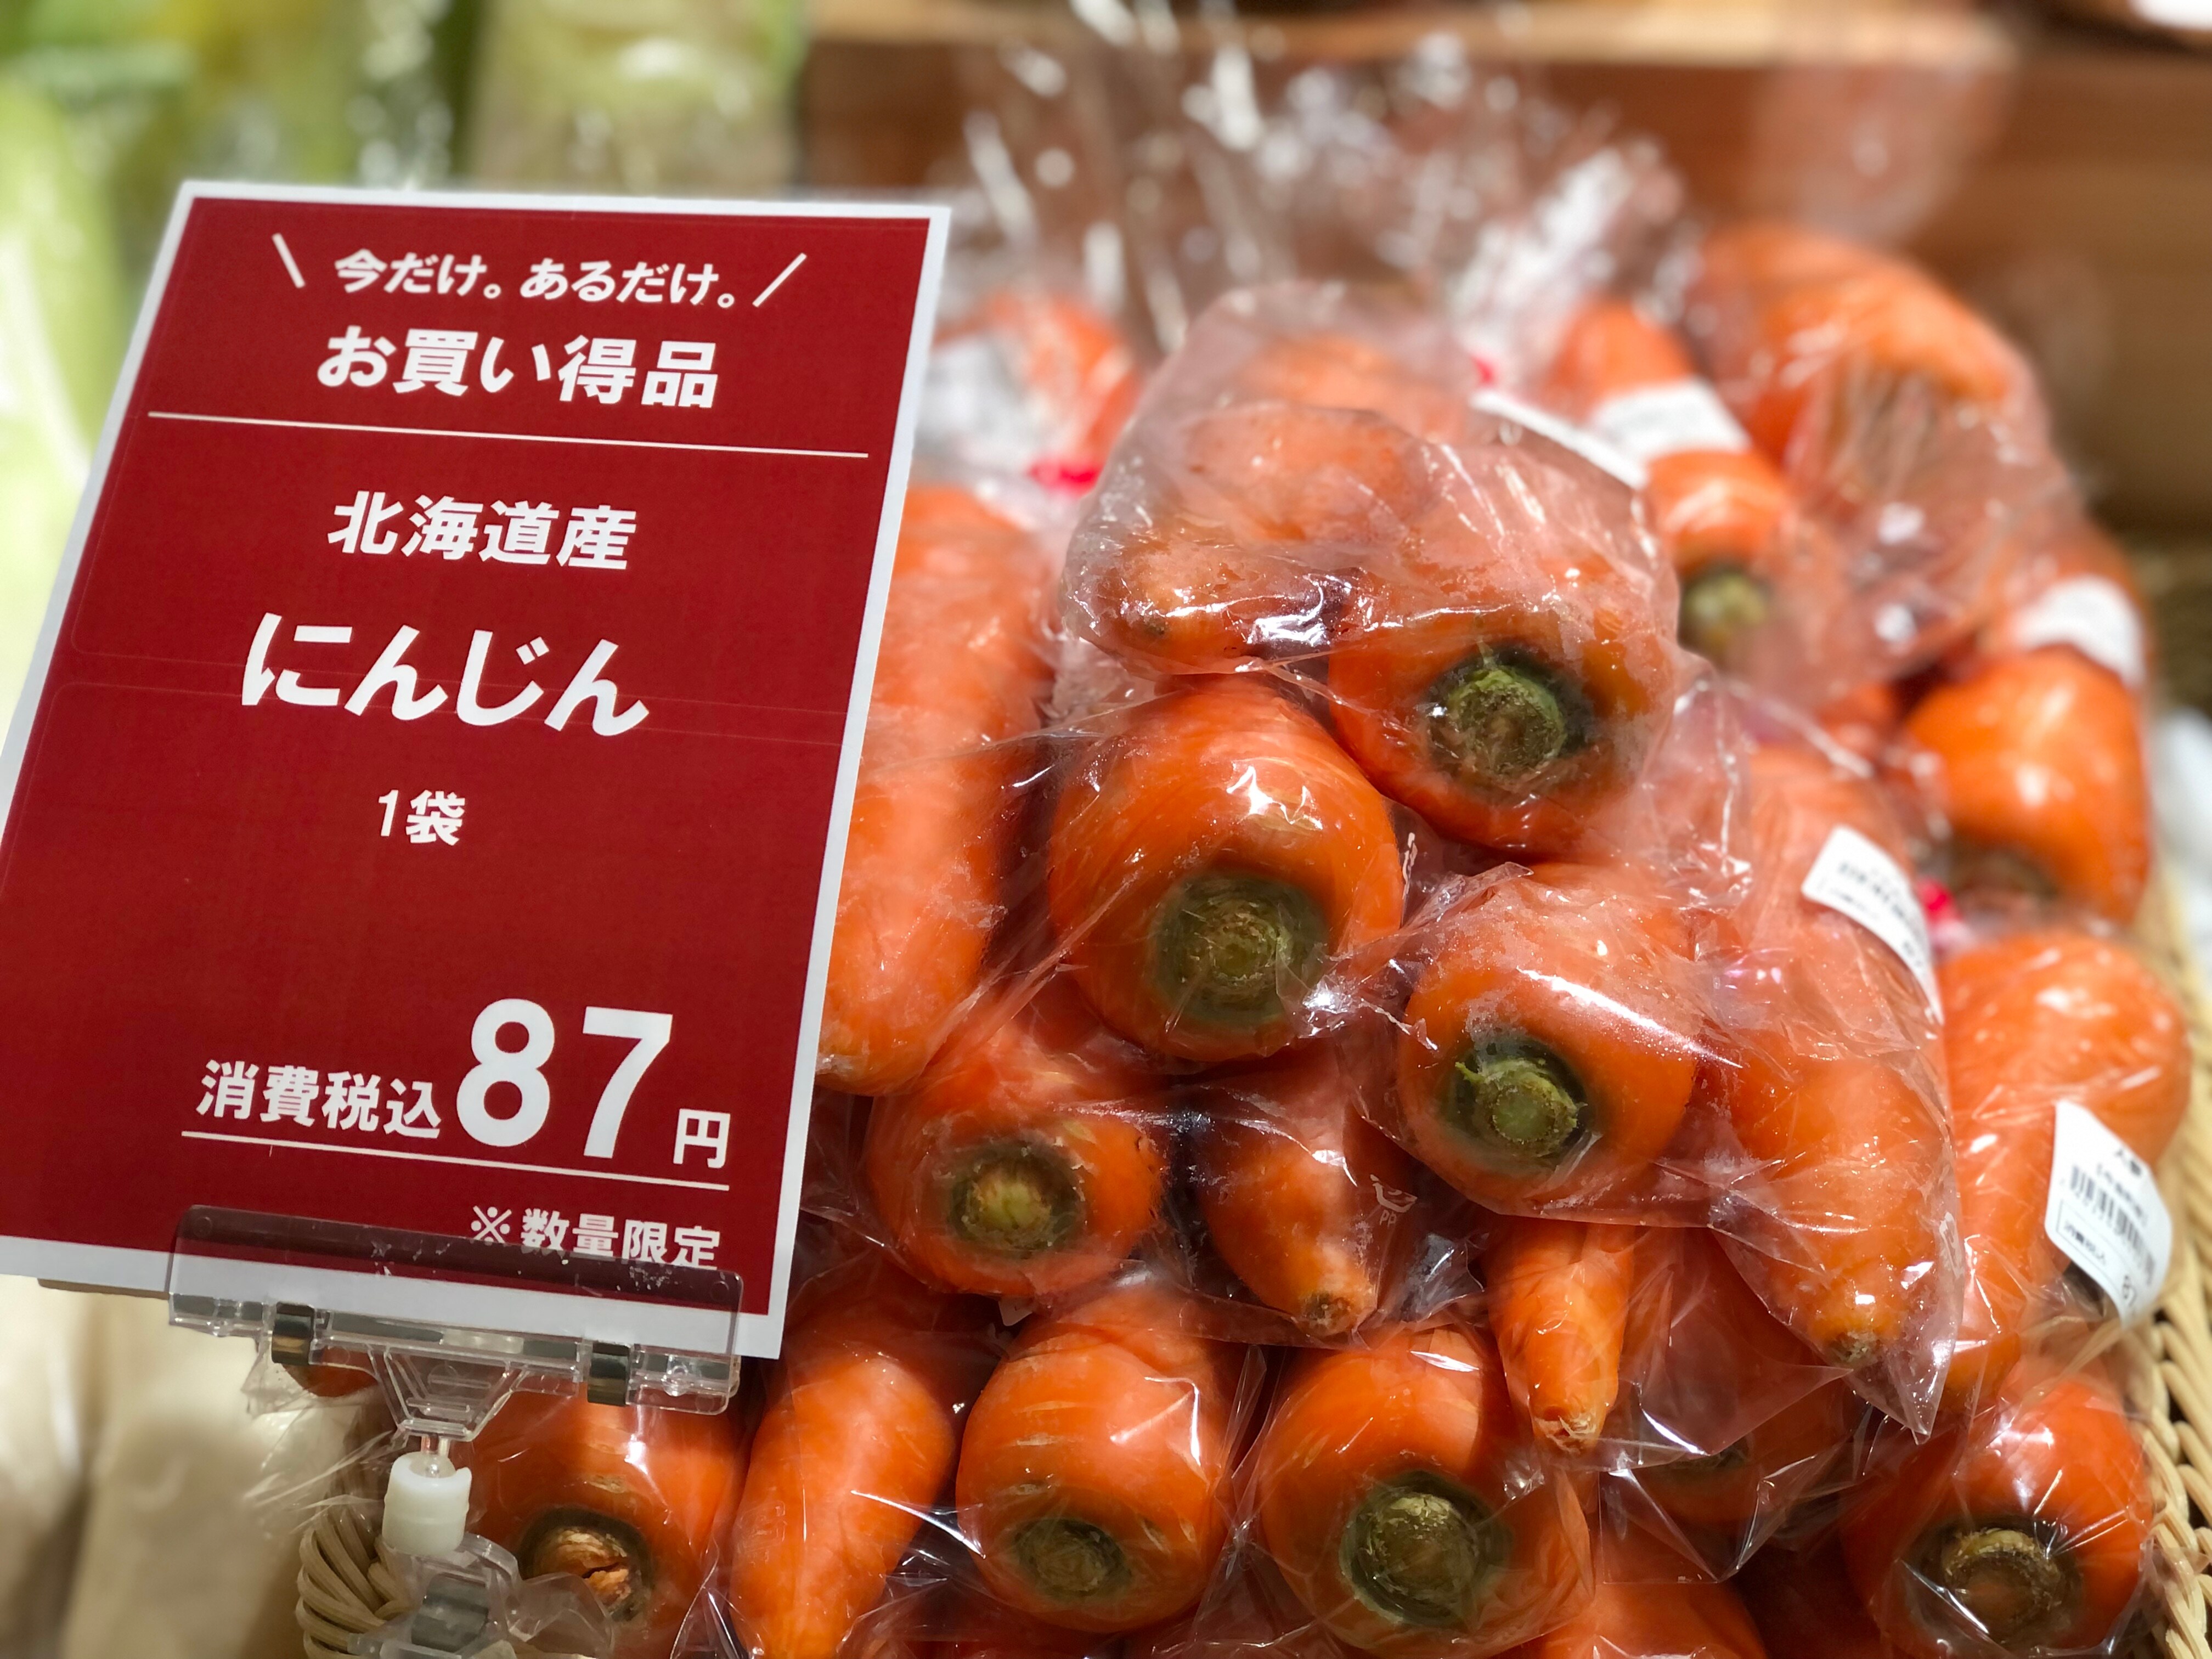 【シエスタハコダテ】本日は野菜の大特売日『野菜の日』です